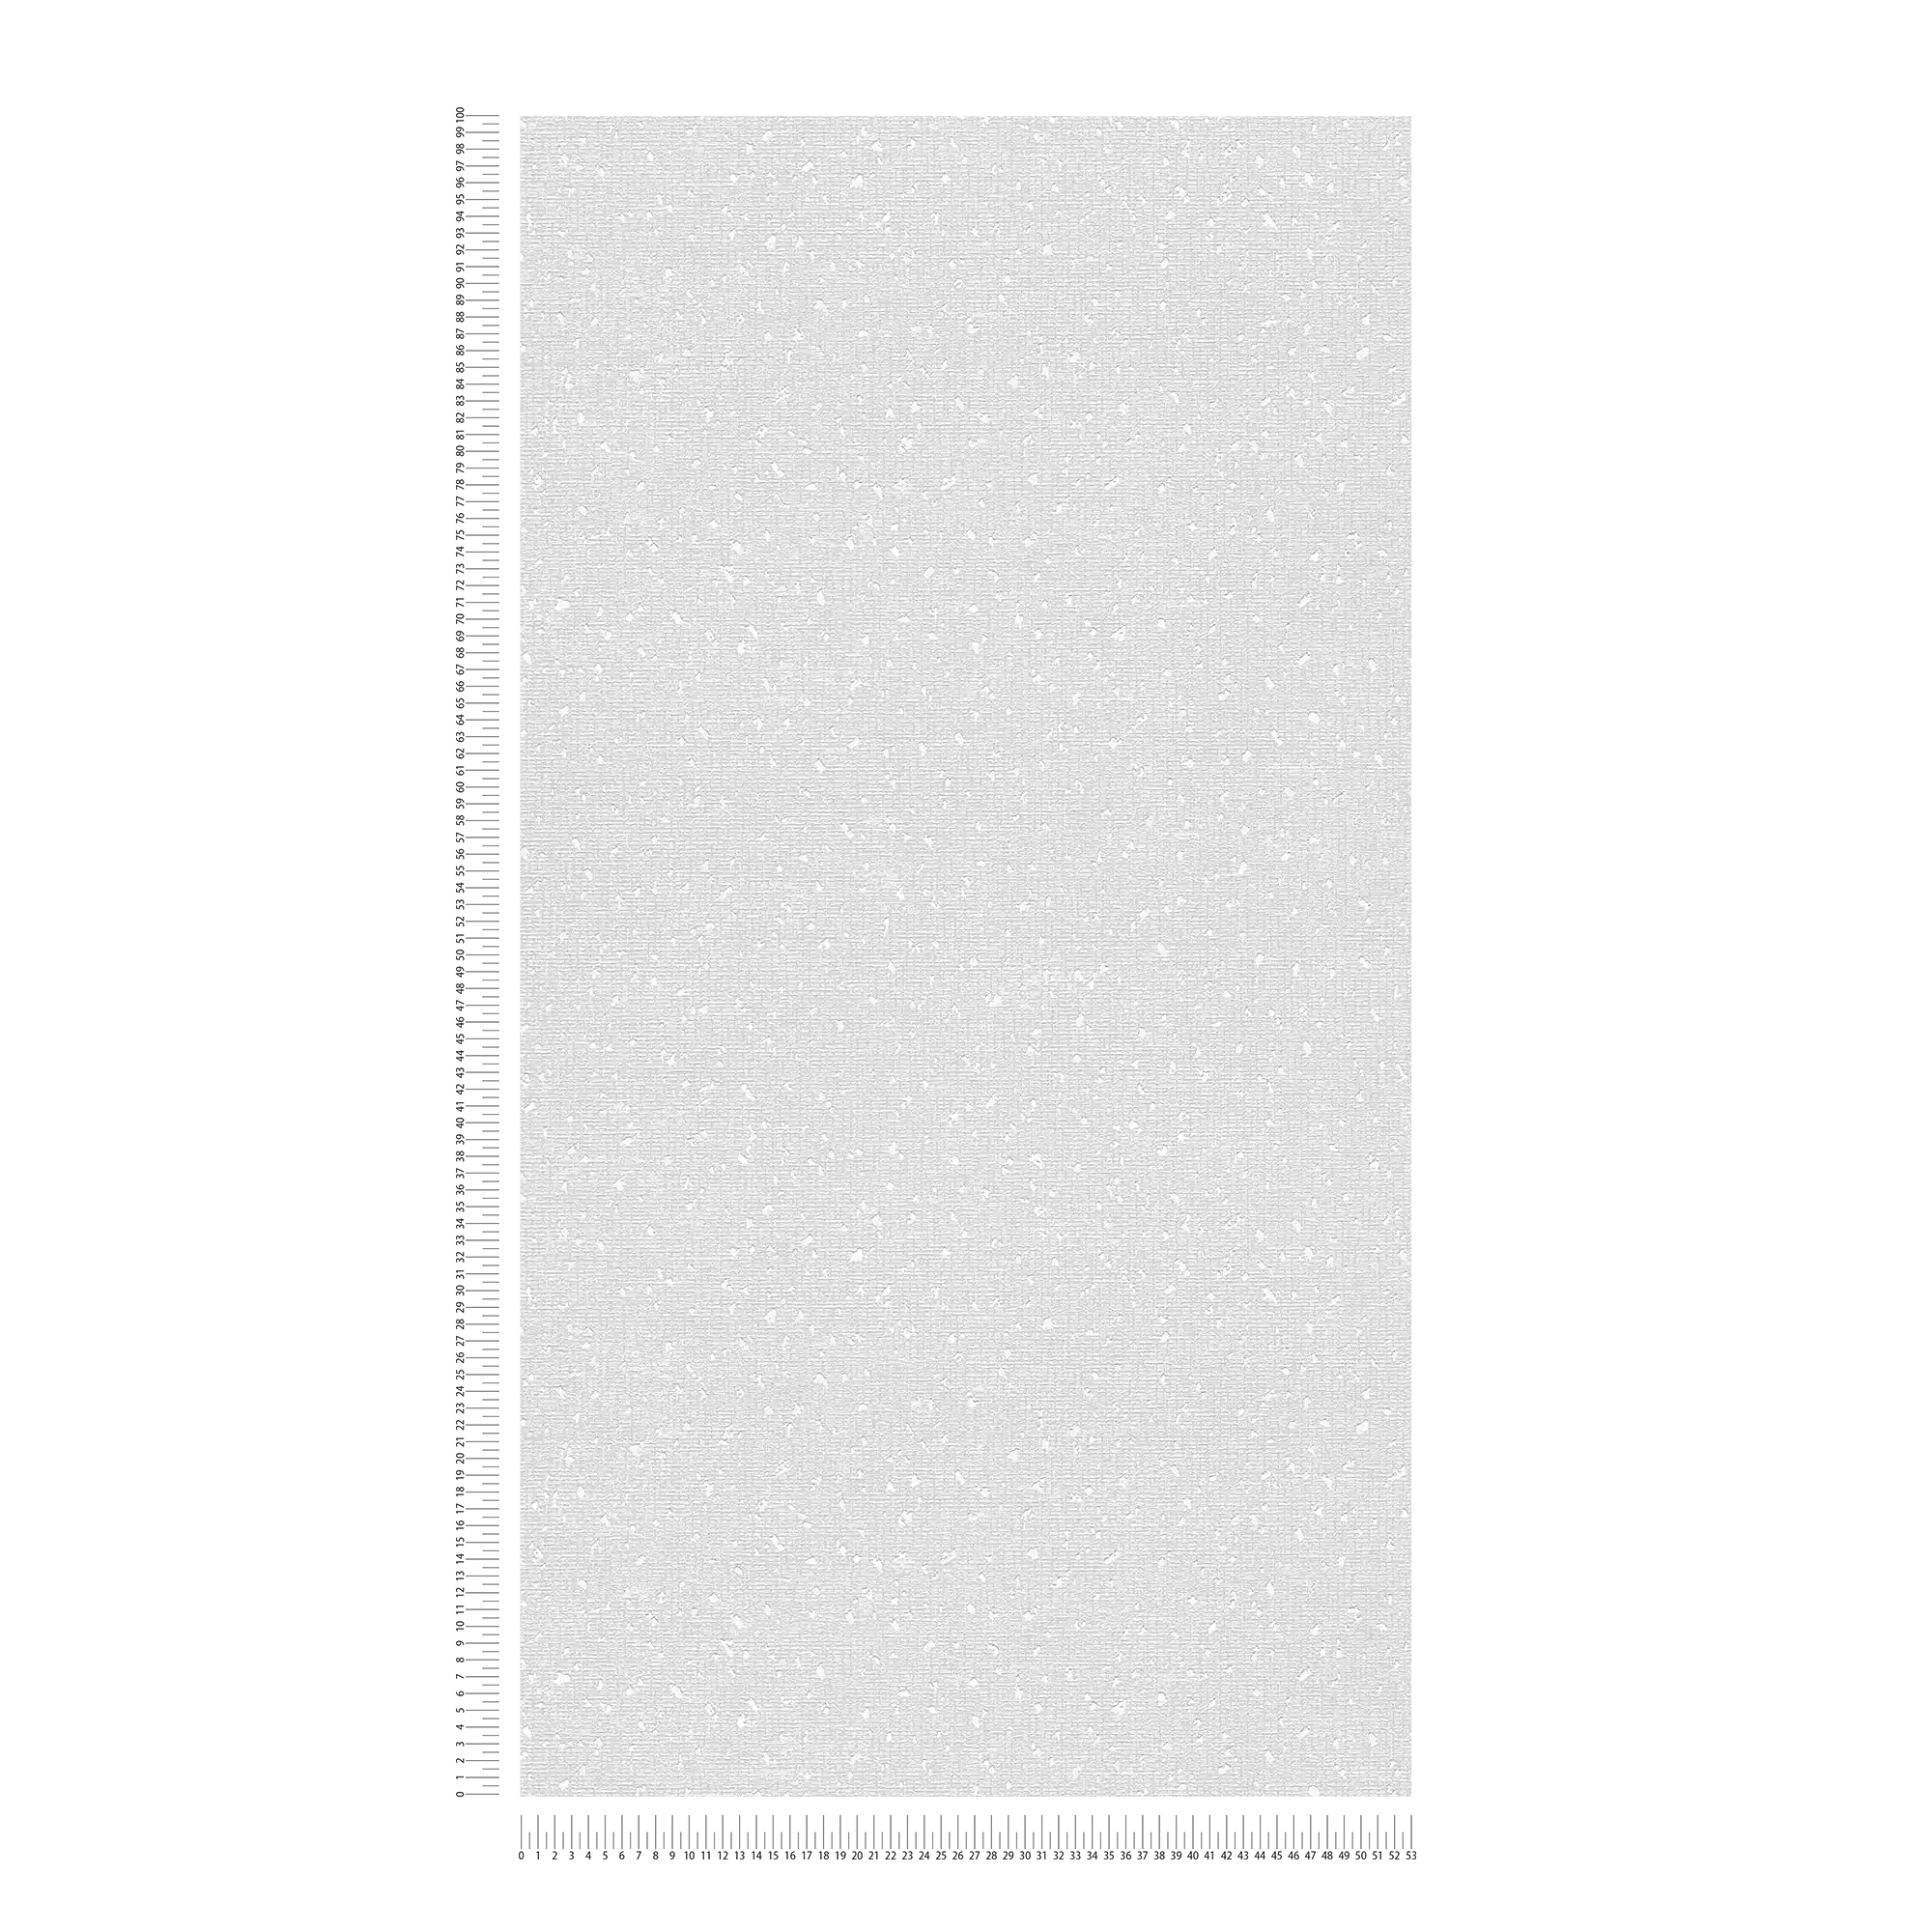             Carta da parati con struttura tessile e accenti metallici - bianco, grigio
        